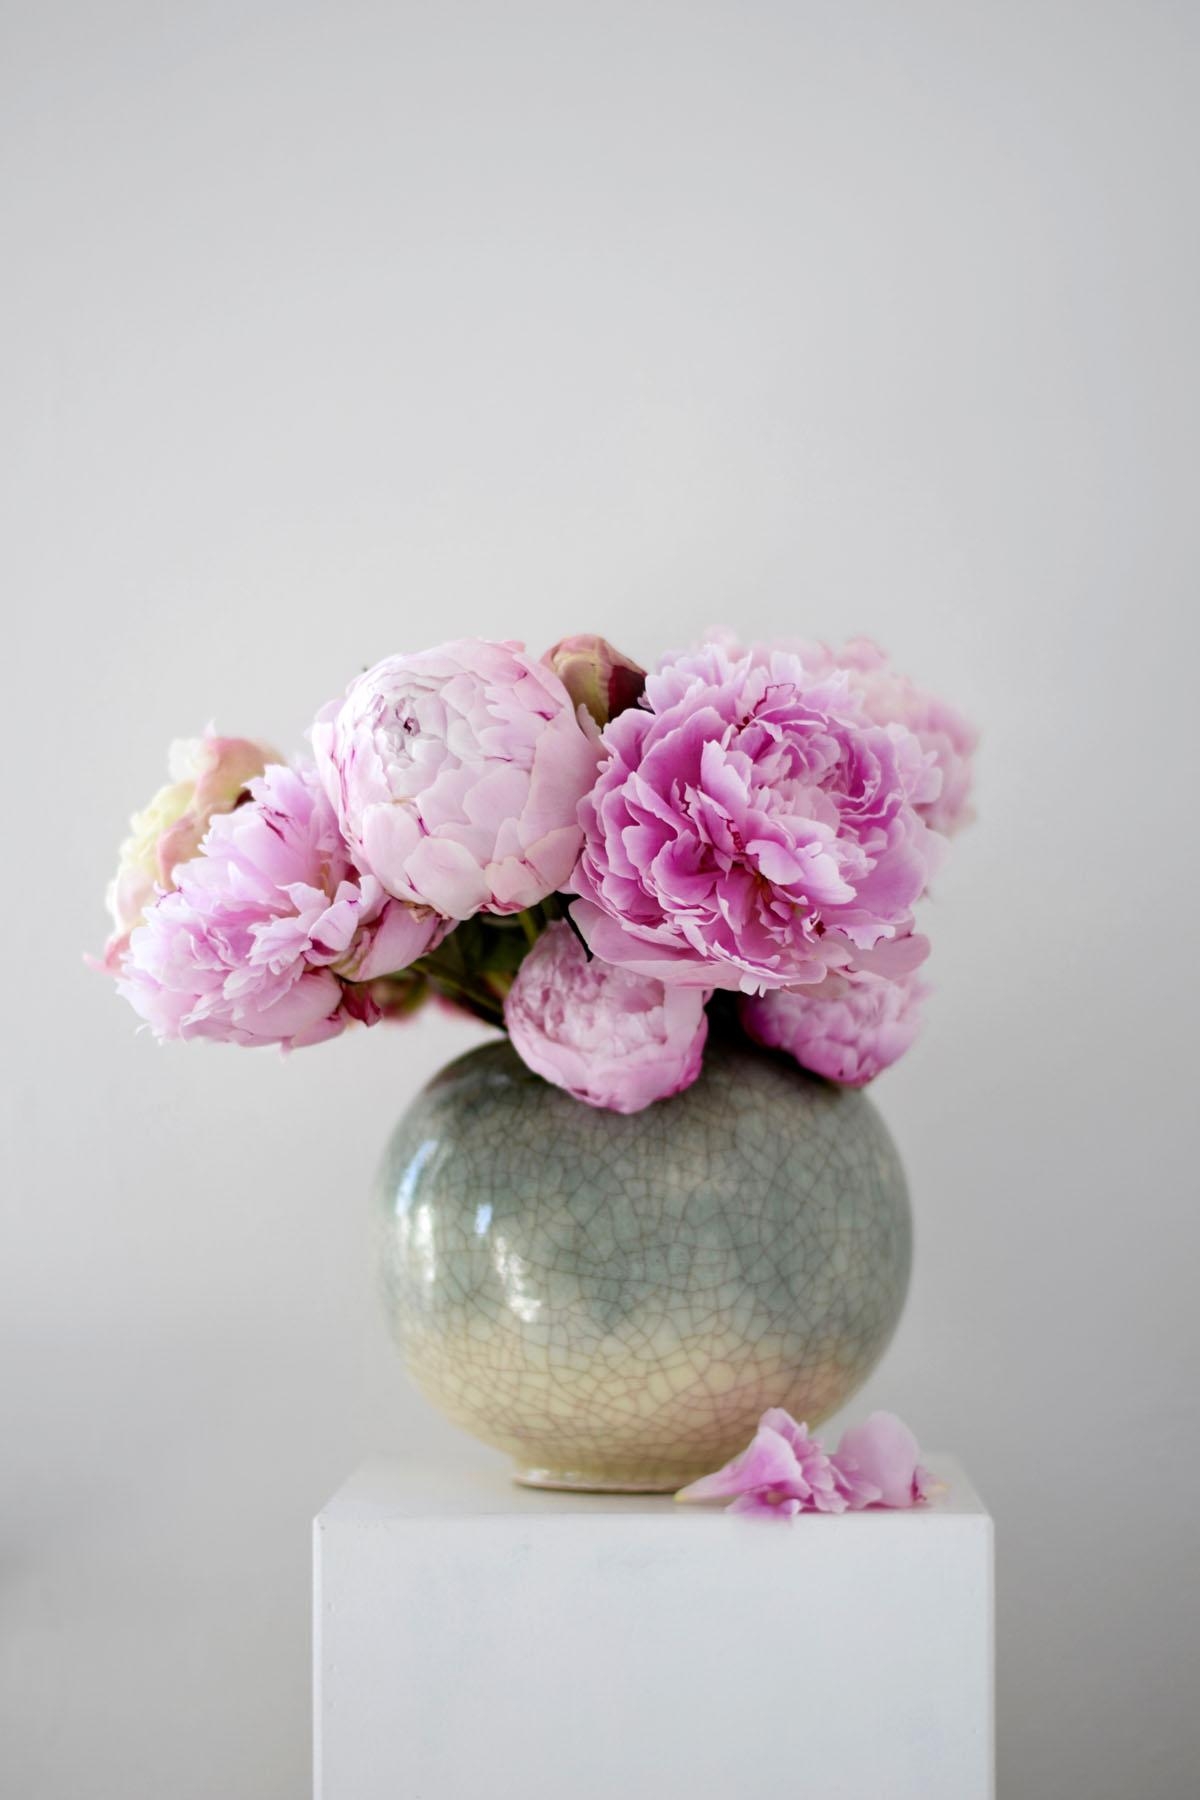 Pfingstrosen in der wunderschön craquelierten Art Deco Vase...
#flowerpower #pfingstrosen #lieblingsblumen #farben